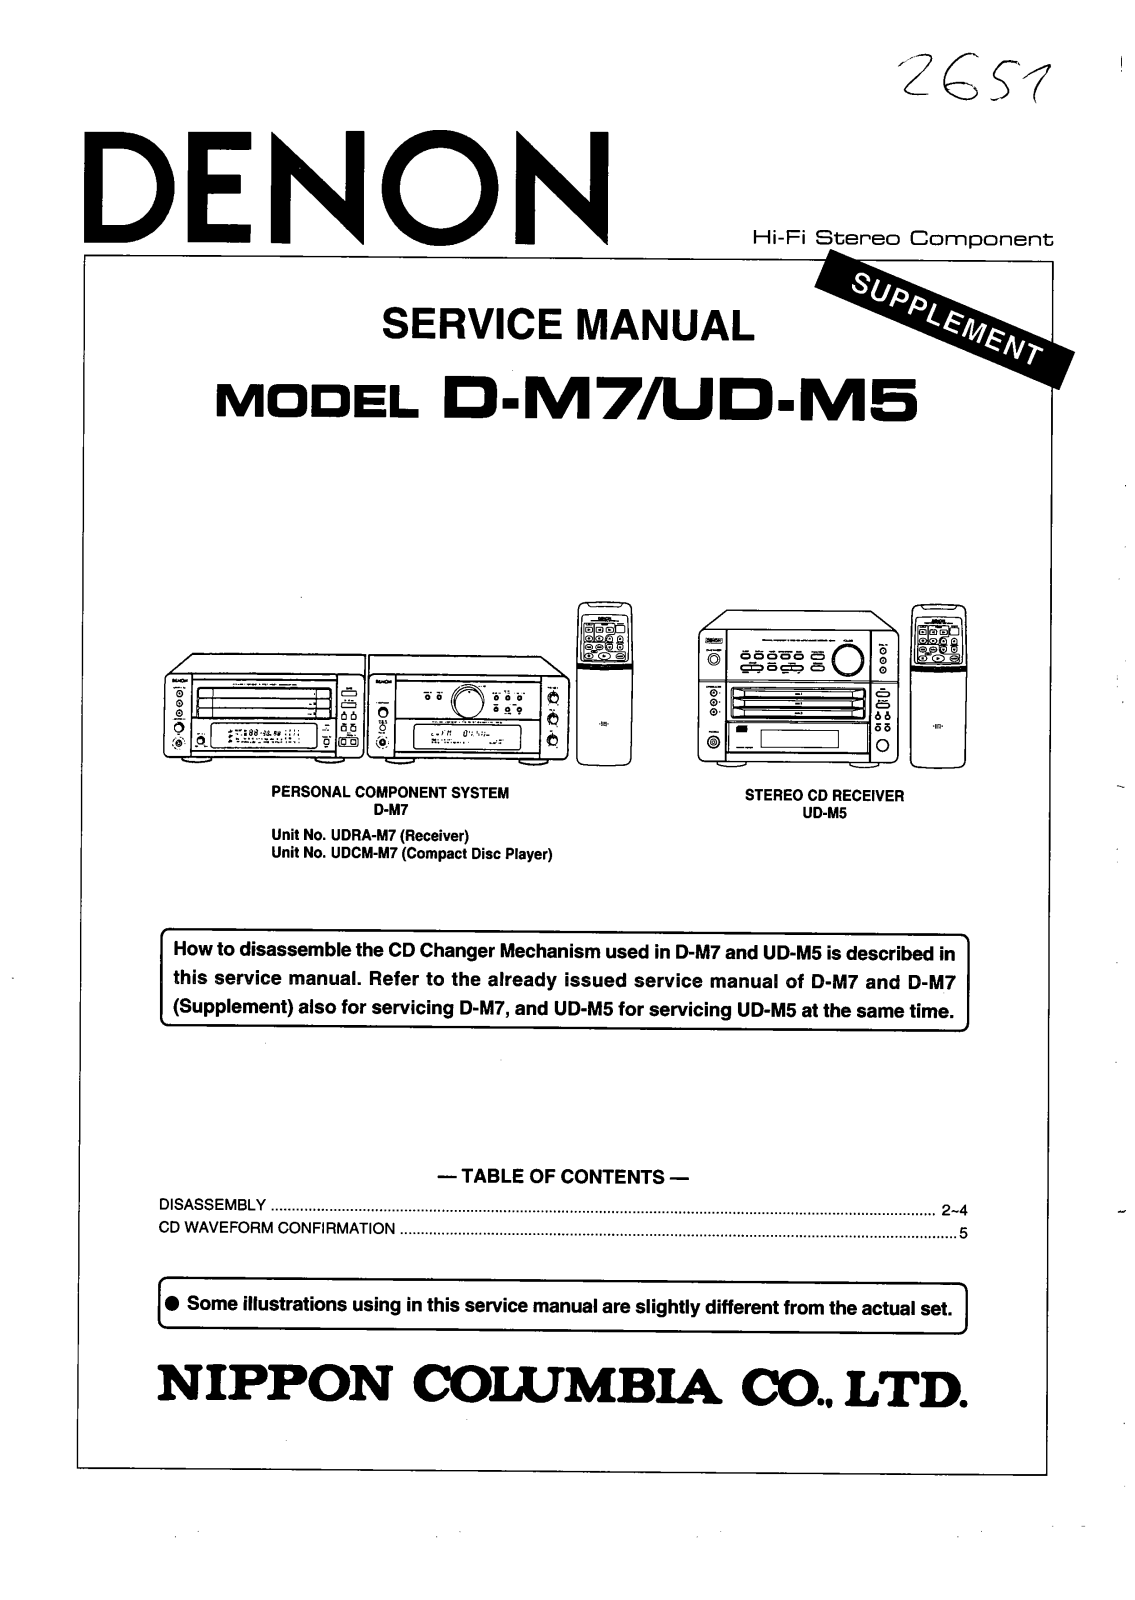 Denon D-M7, UD-M5 SUPP Service Bulletin